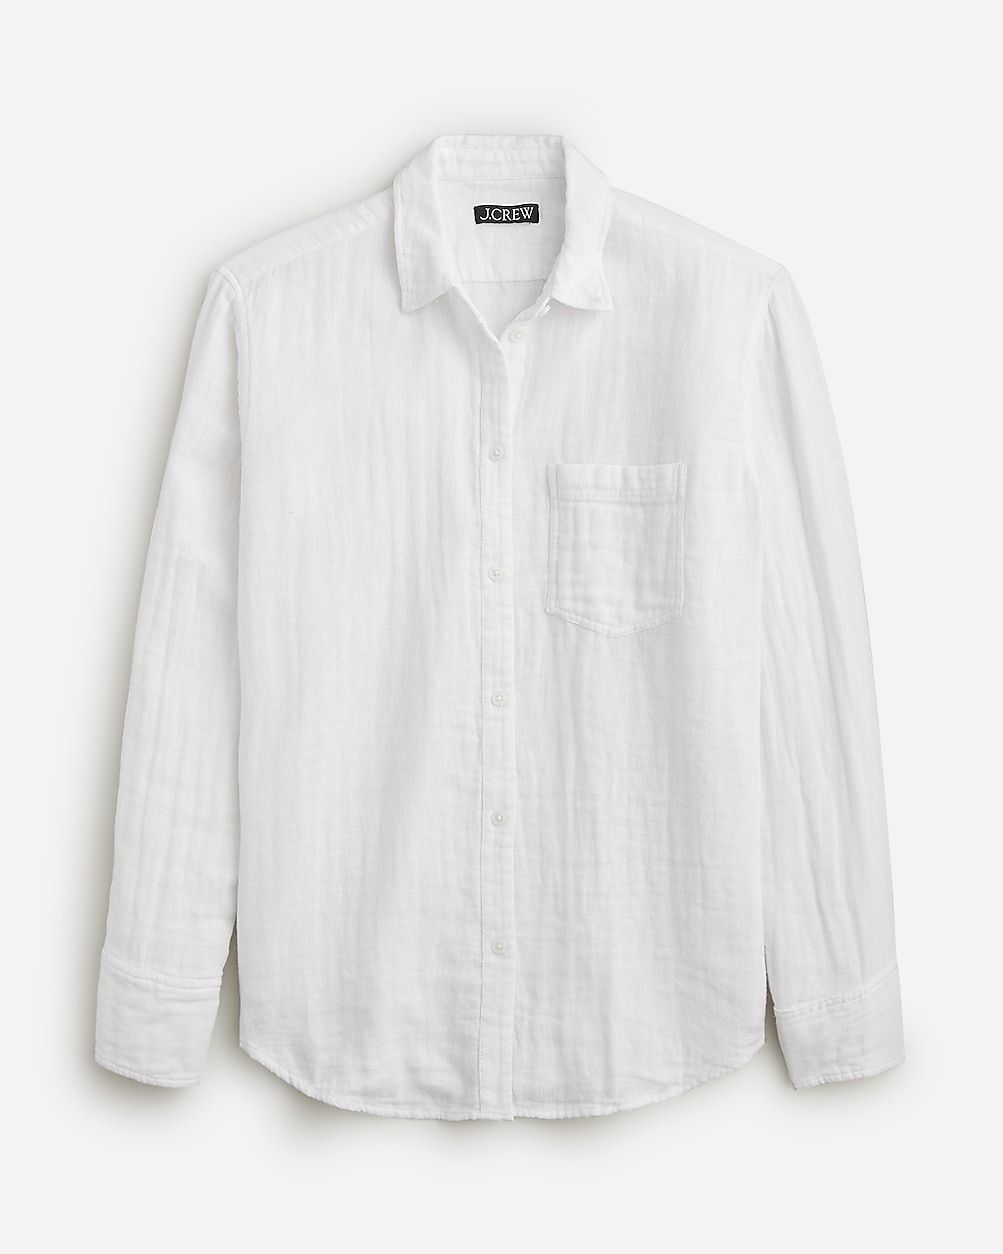 Gar&ccedil;on classic shirt in cotton-linen blend gauze | J.Crew US